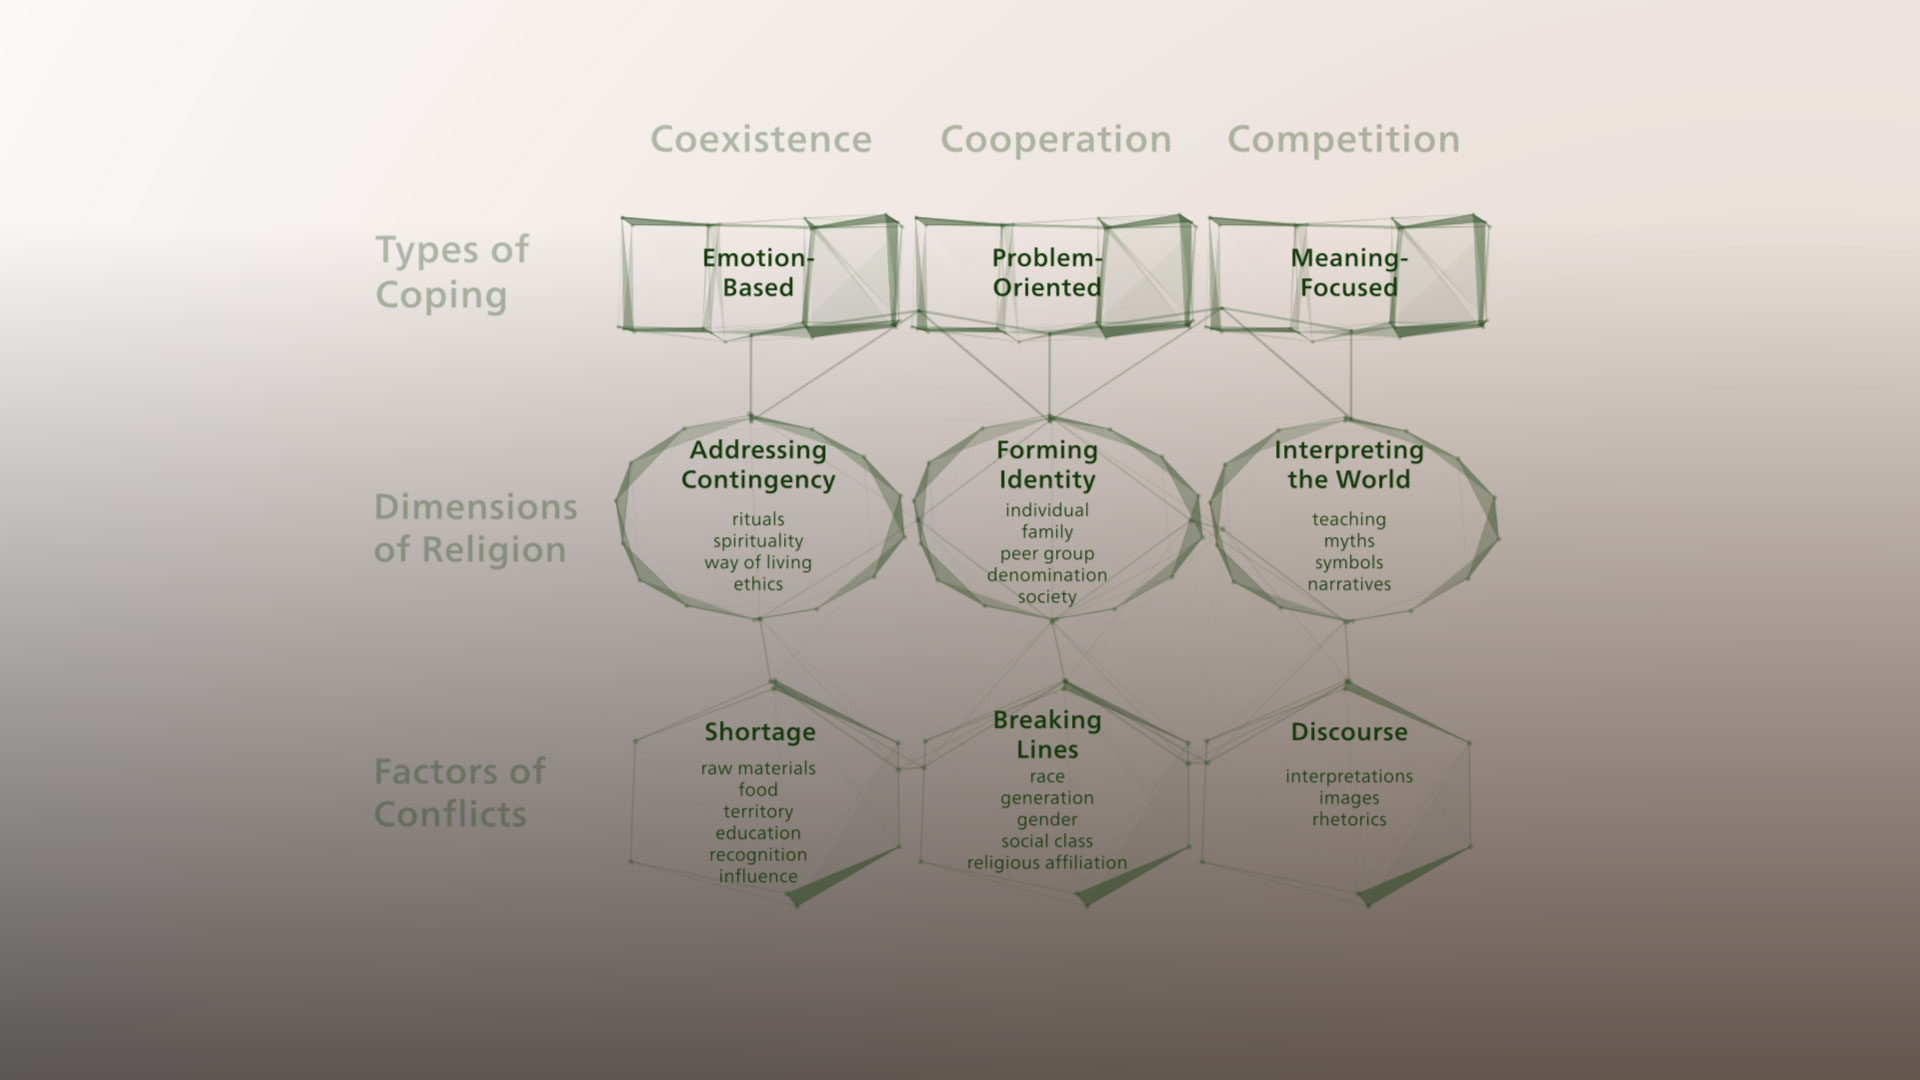 Modell zur Analyse von Konflikten mit religiösen Dimensionen der IFK «Religious Conflicts and Coping Strategies». © IFK «Religious Conflicts and Coping Strategies»